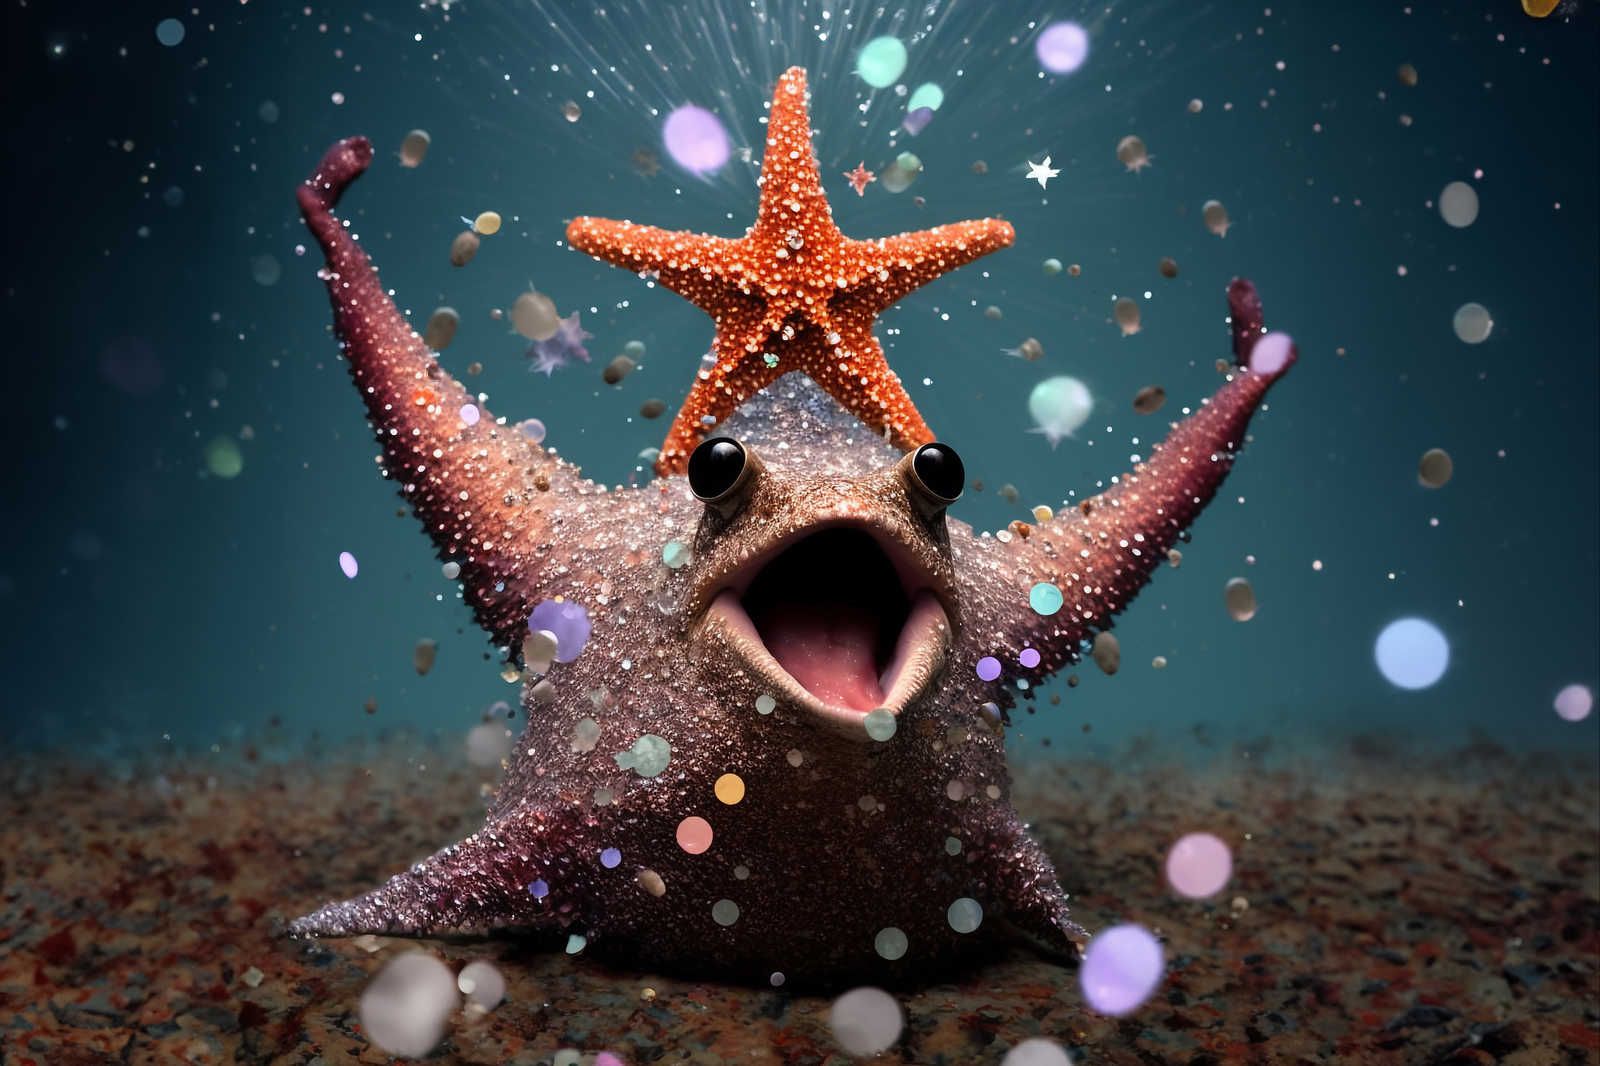             KI Lienzo »estrella de mar«< - 90 cm x 60 cm
        